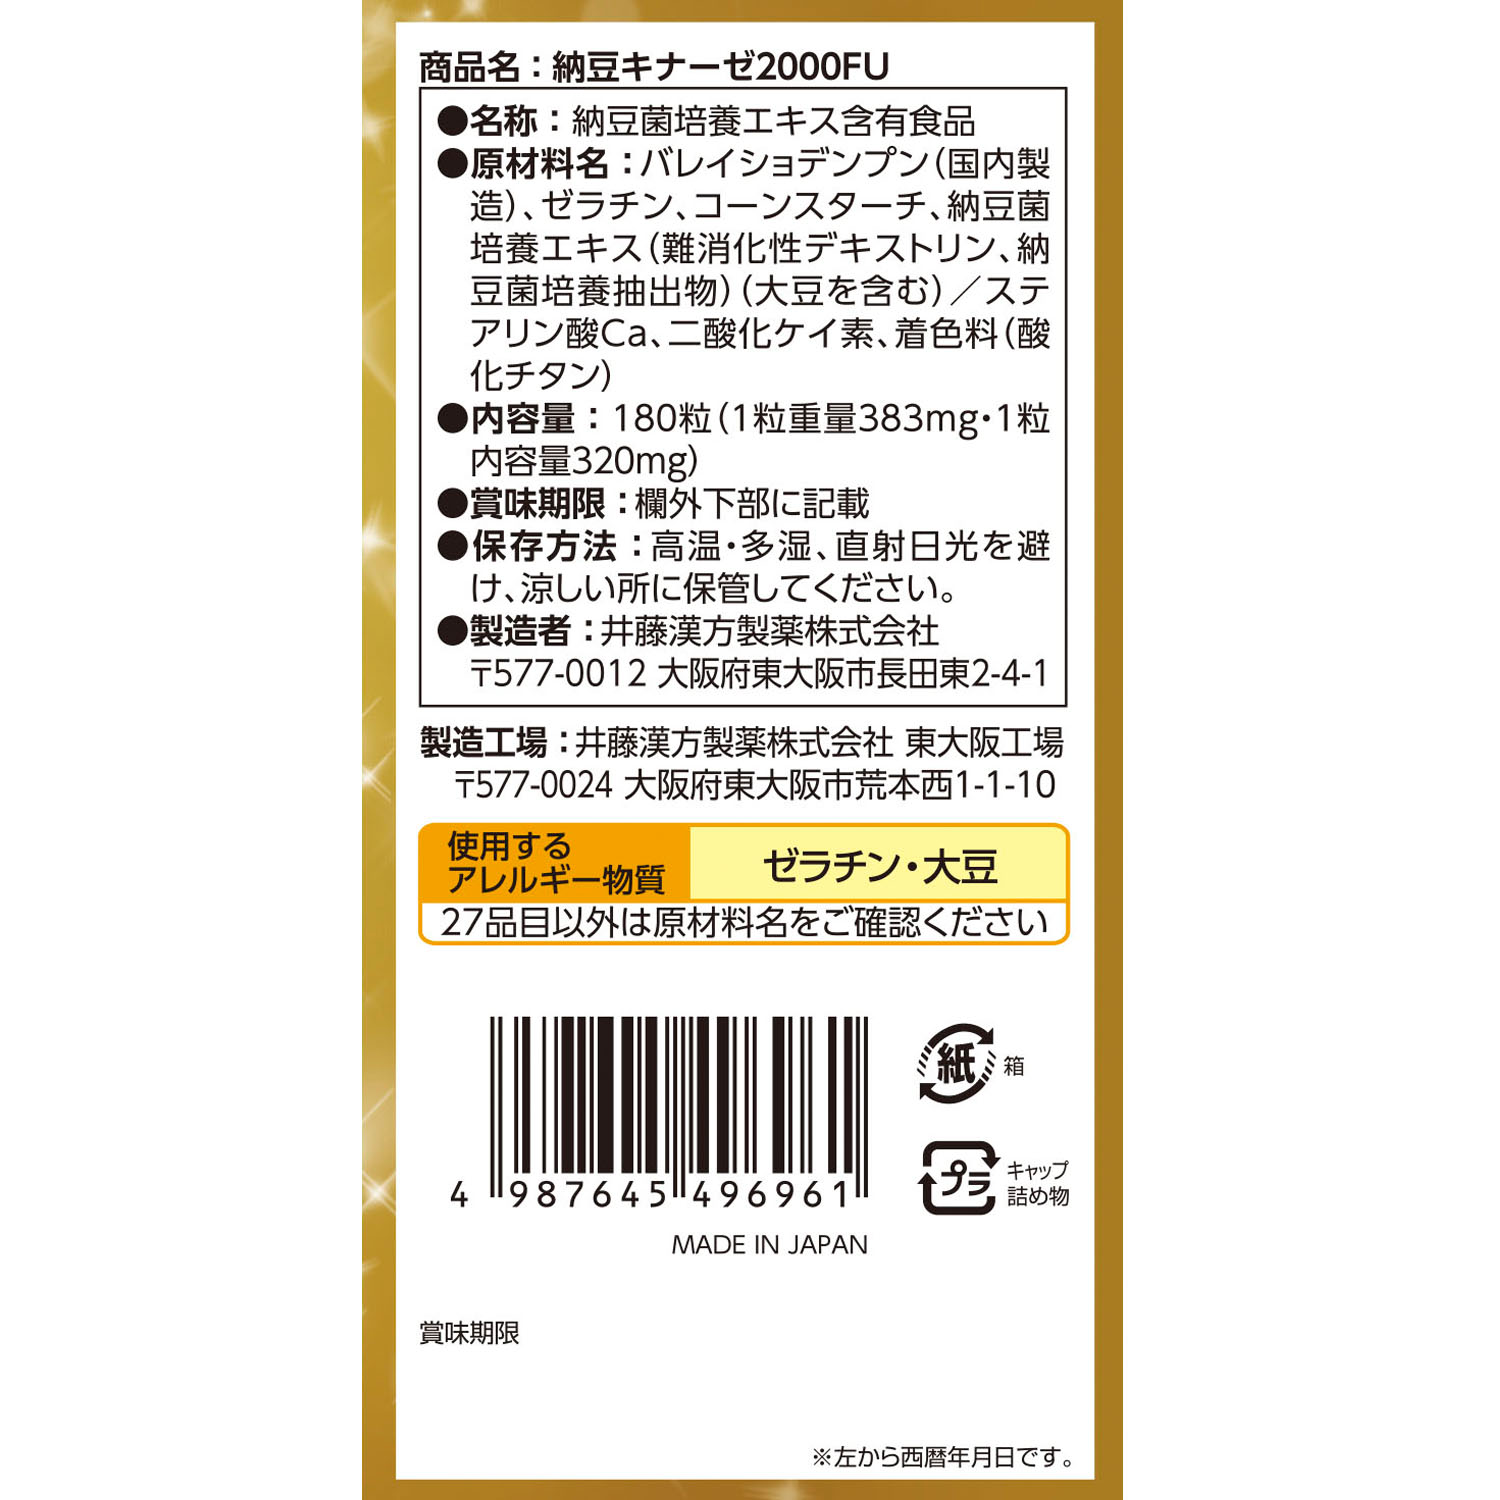 納豆キナーゼ2000FU | 健康食品のことなら井藤漢方製薬